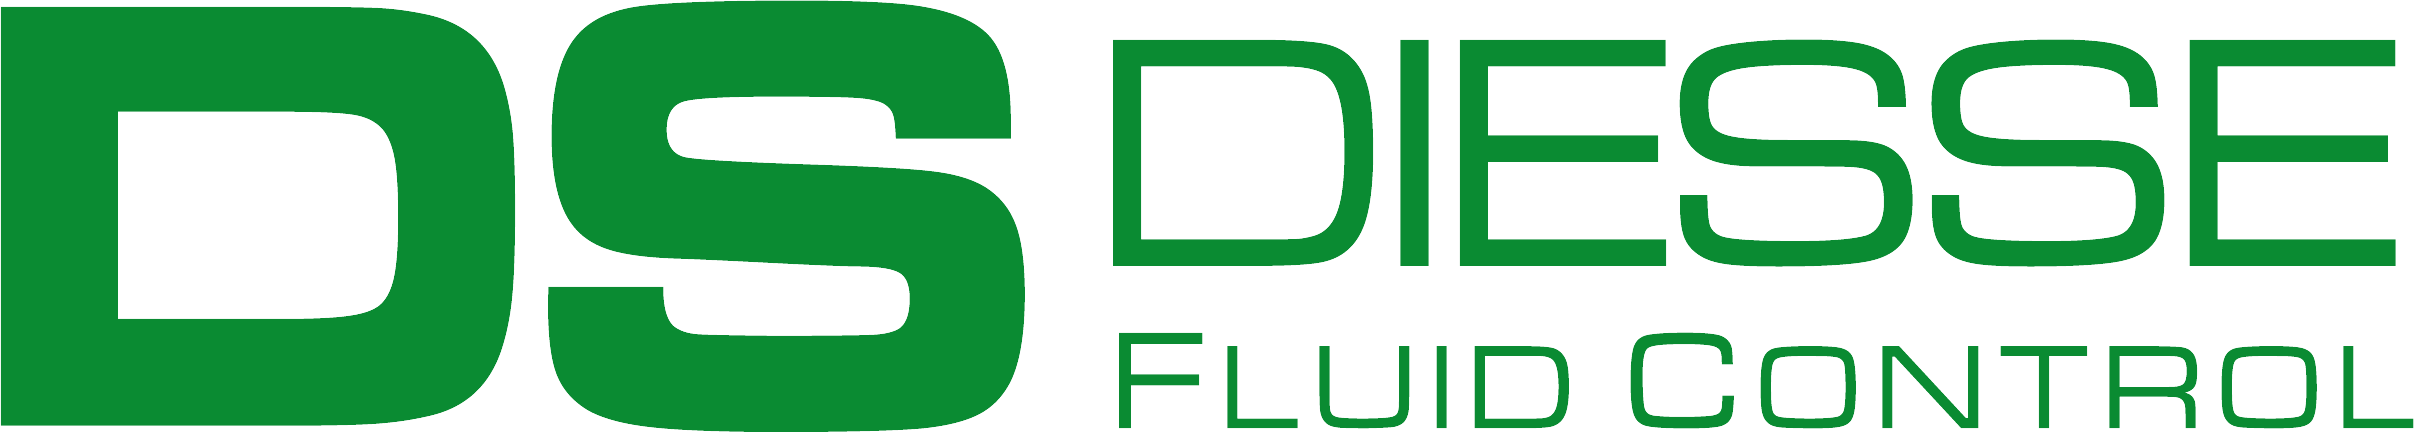 Diesse Fluid Control, официальный дистрибьютор в России